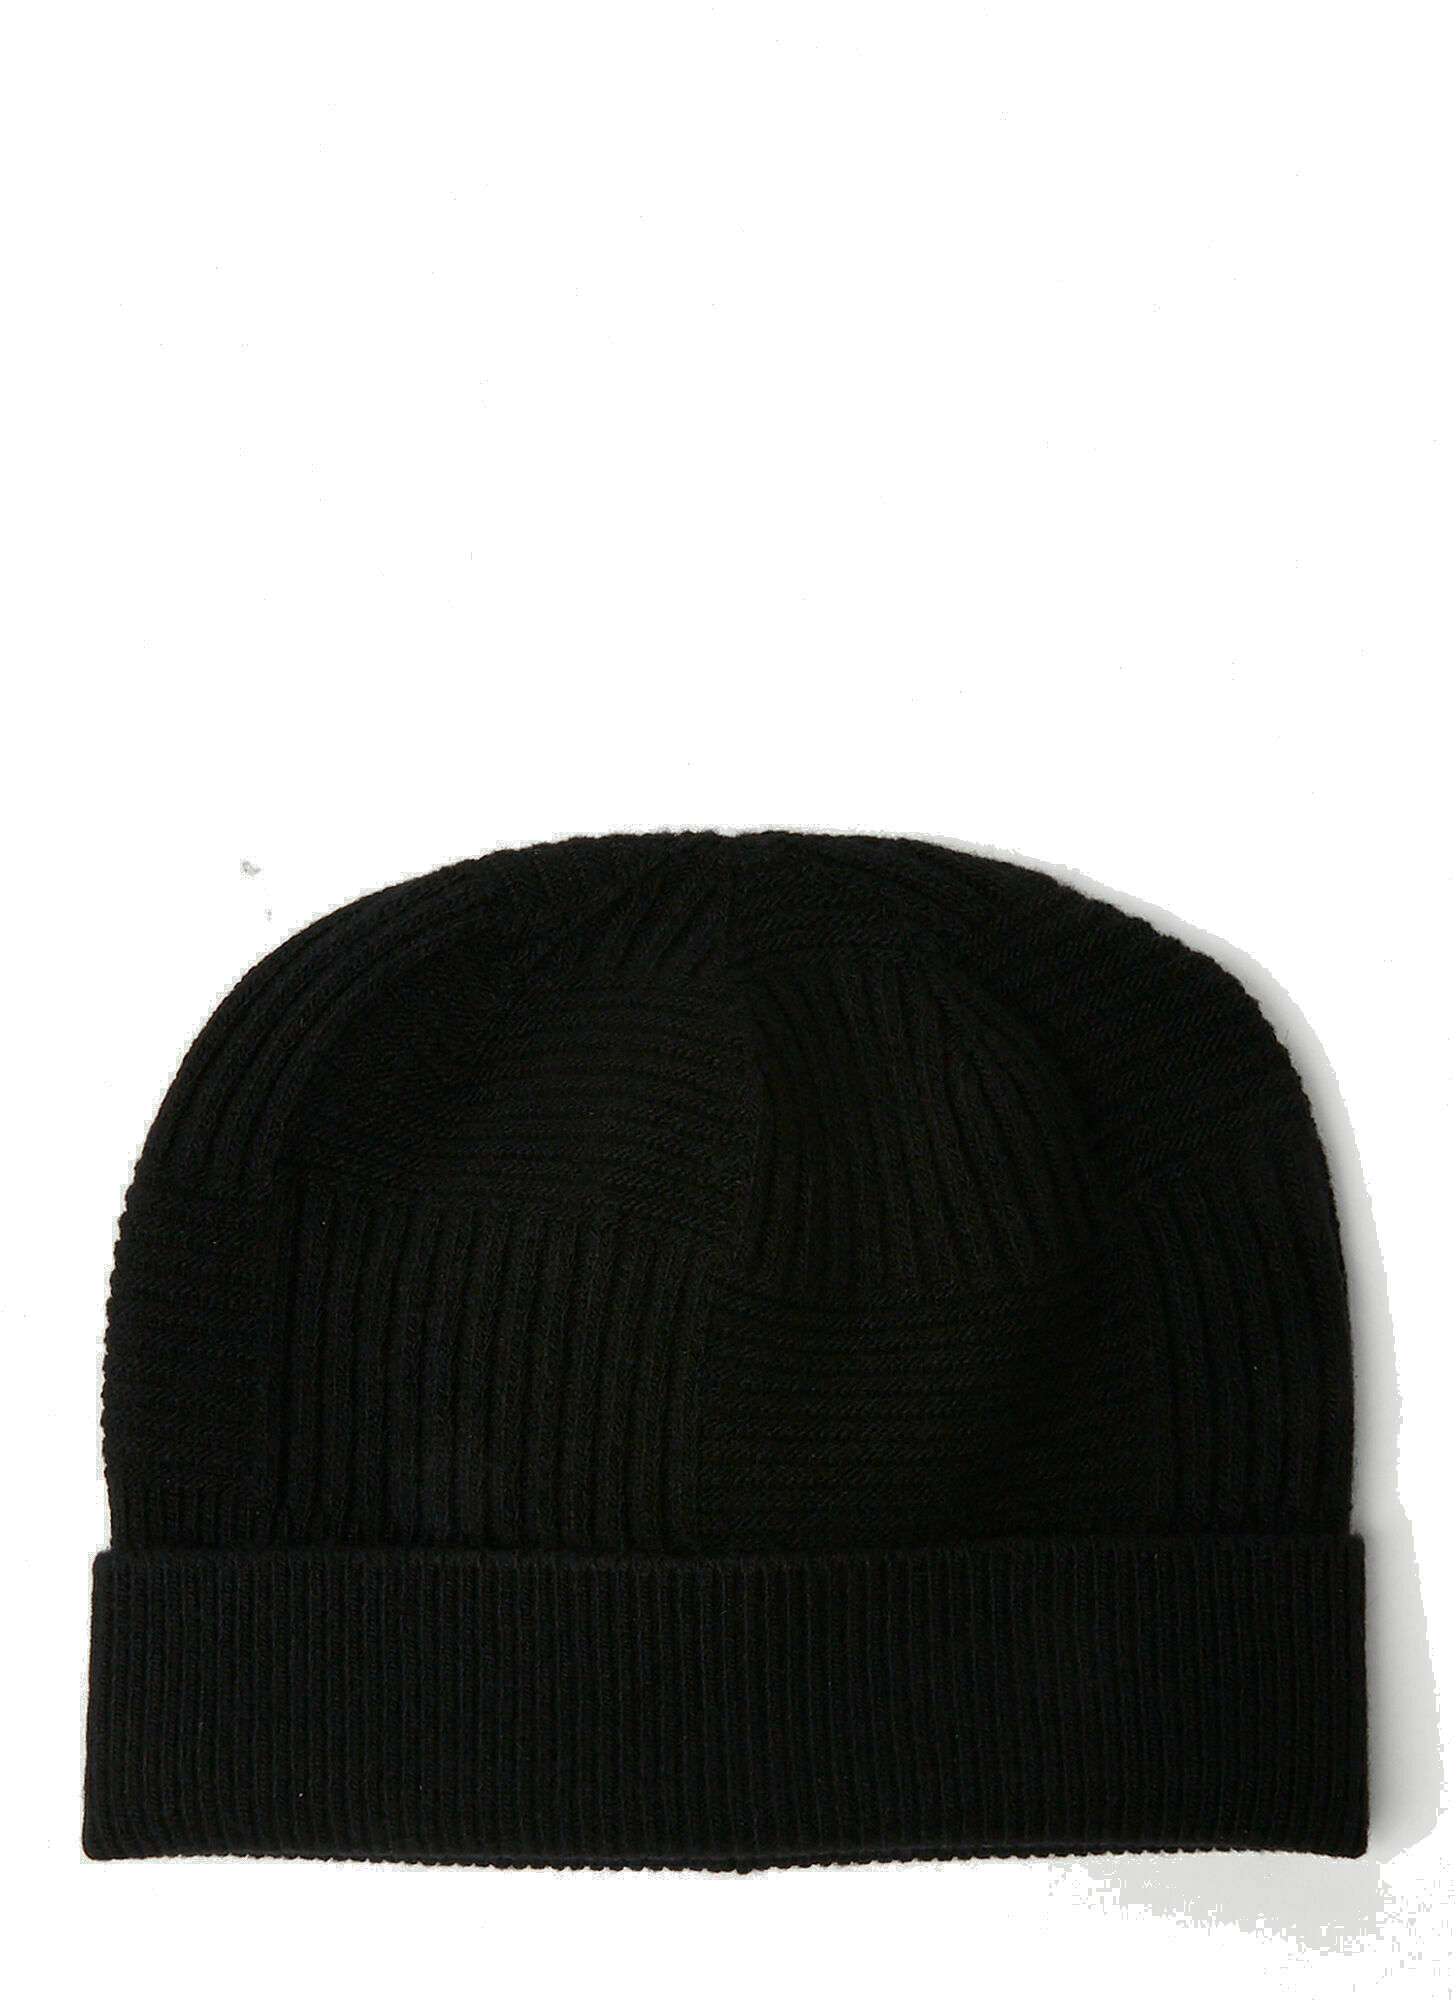 Photo: Intreccio Knit Beanie Hat in Black